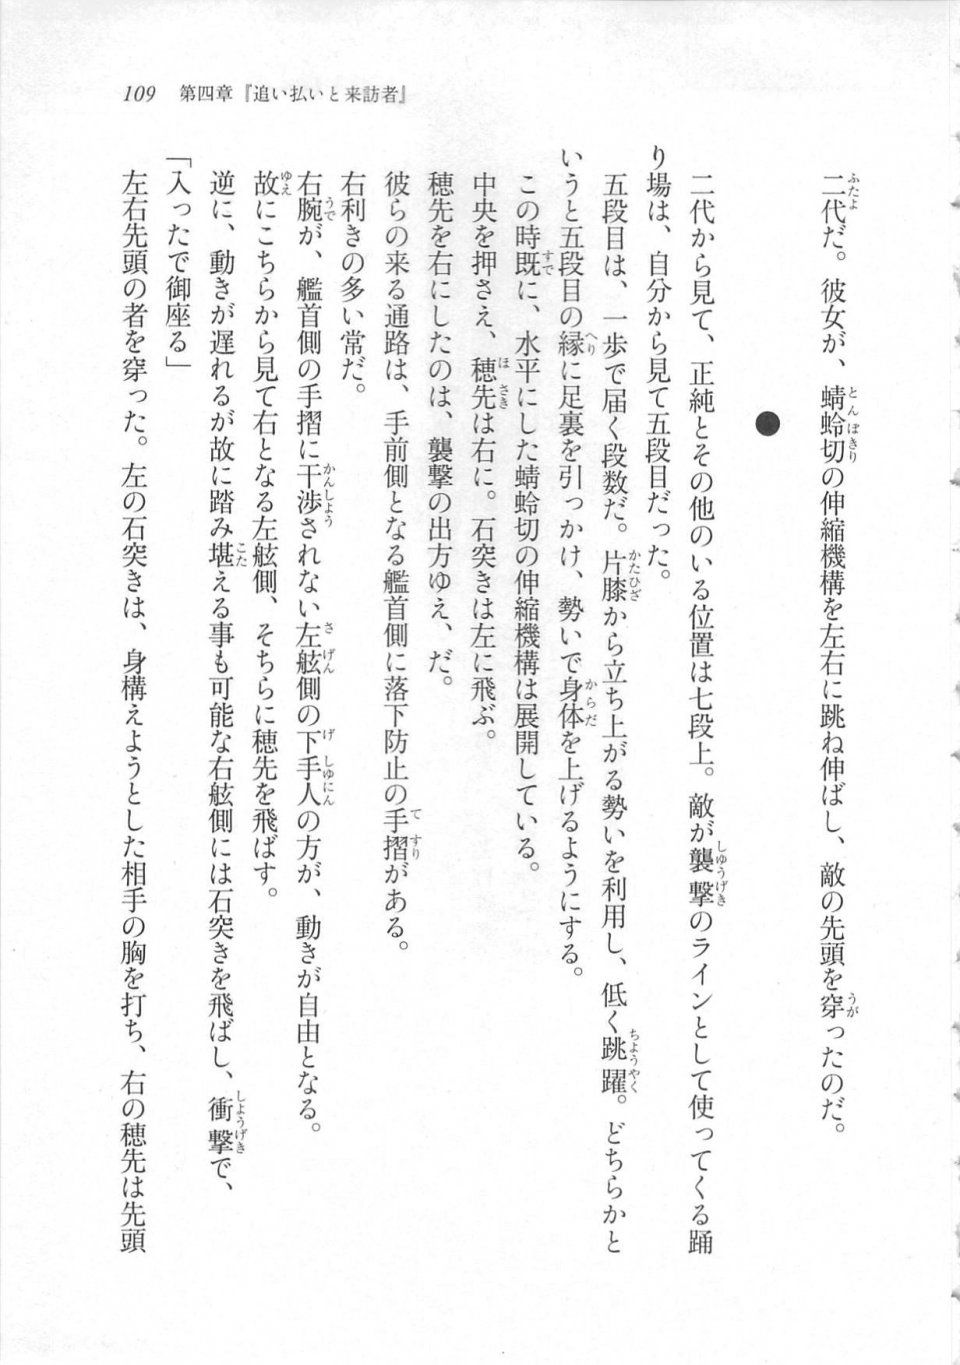 Kyoukai Senjou no Horizon LN Sidestory Vol 3 - Photo #113